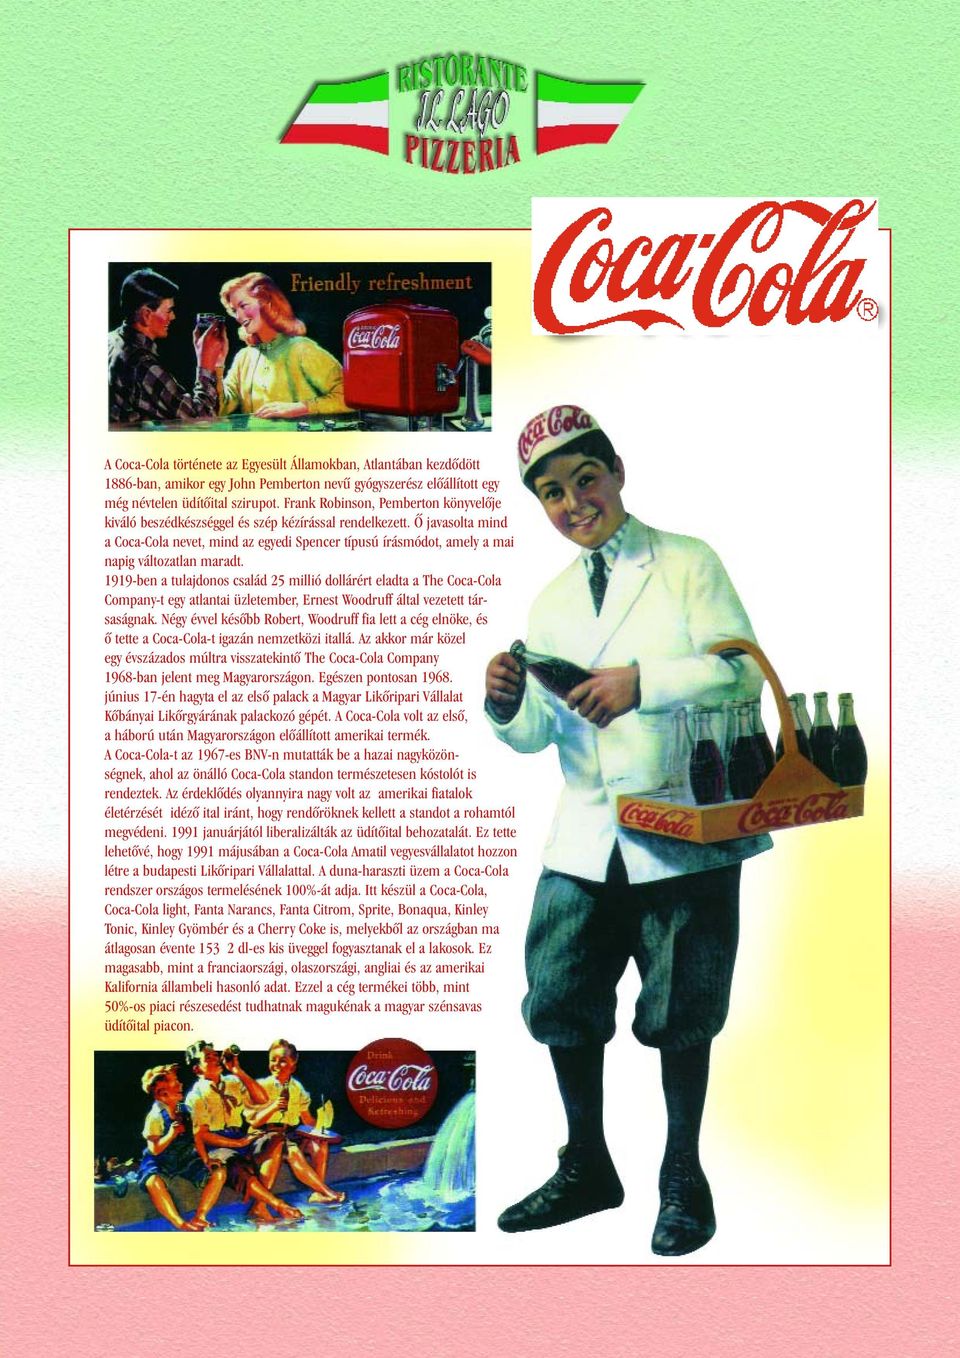 Õ javasolta mind a Coca-Cola nevet, mind az egyedi Spencer típusú írásmódot, amely a mai napig változatlan maradt.